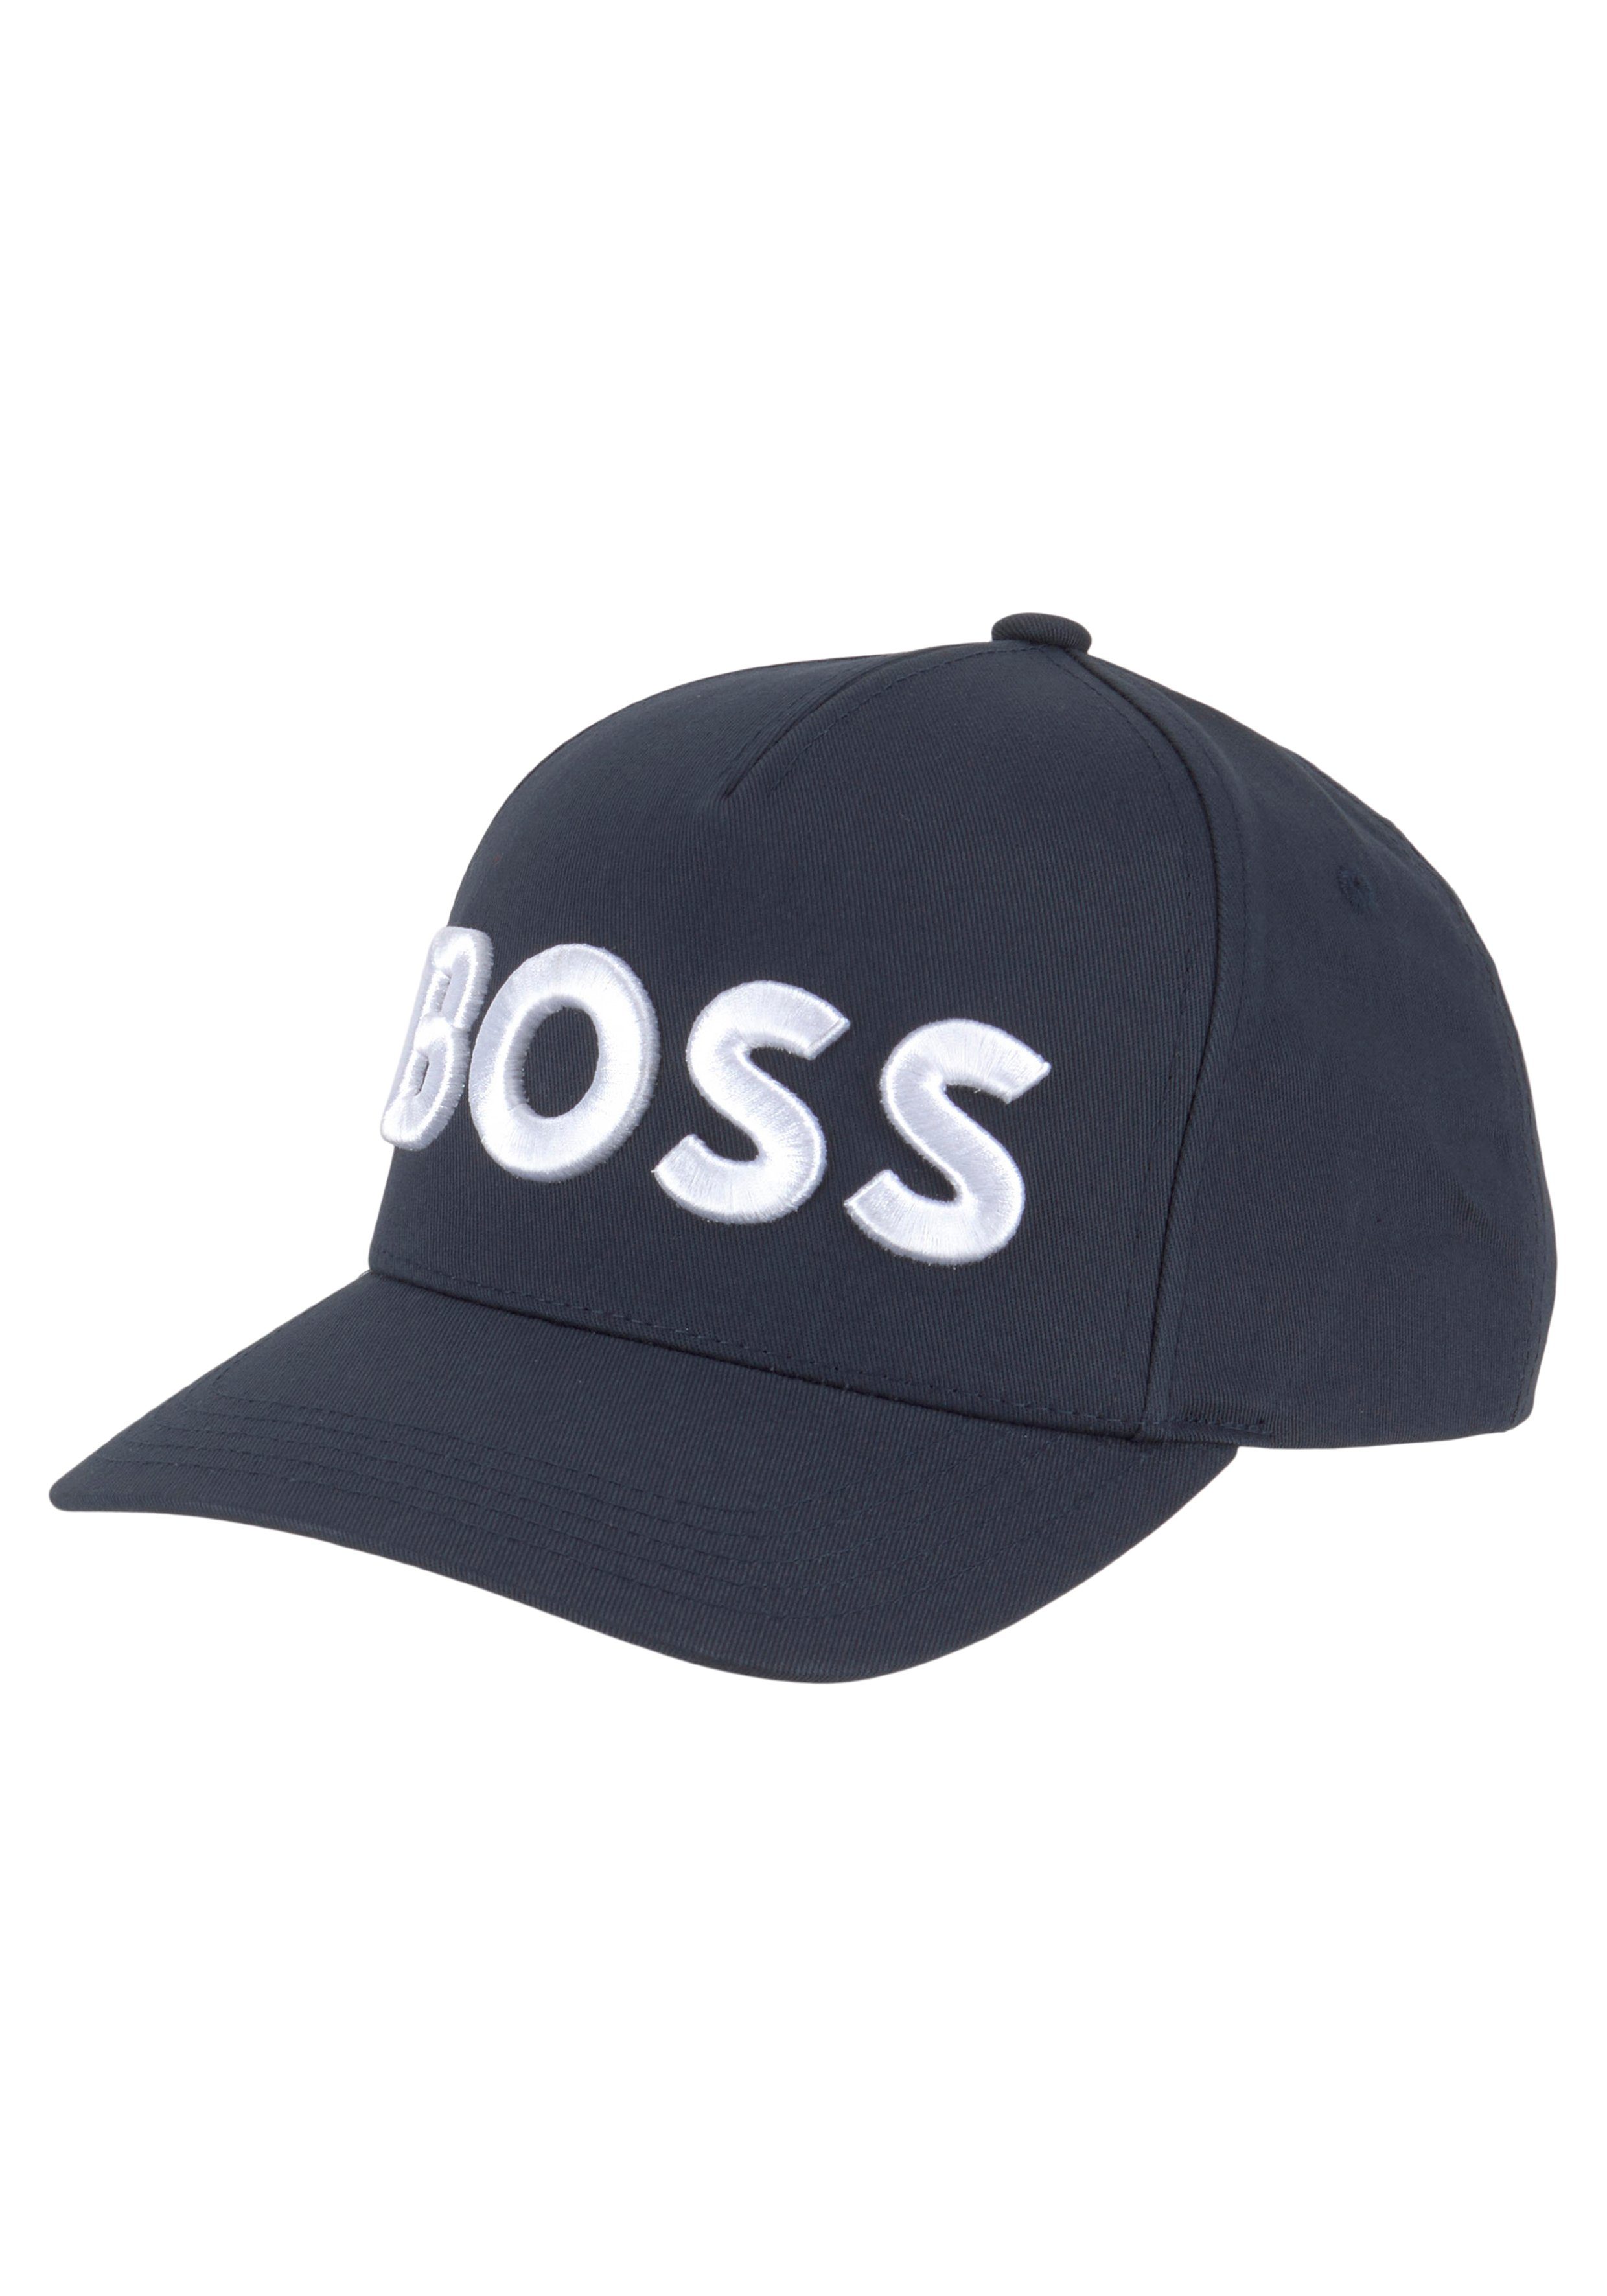 kontrastfarbenem Sevile-BOSS-6 Cap dunkelblau mit Baseball BOSS Labelschriftzug